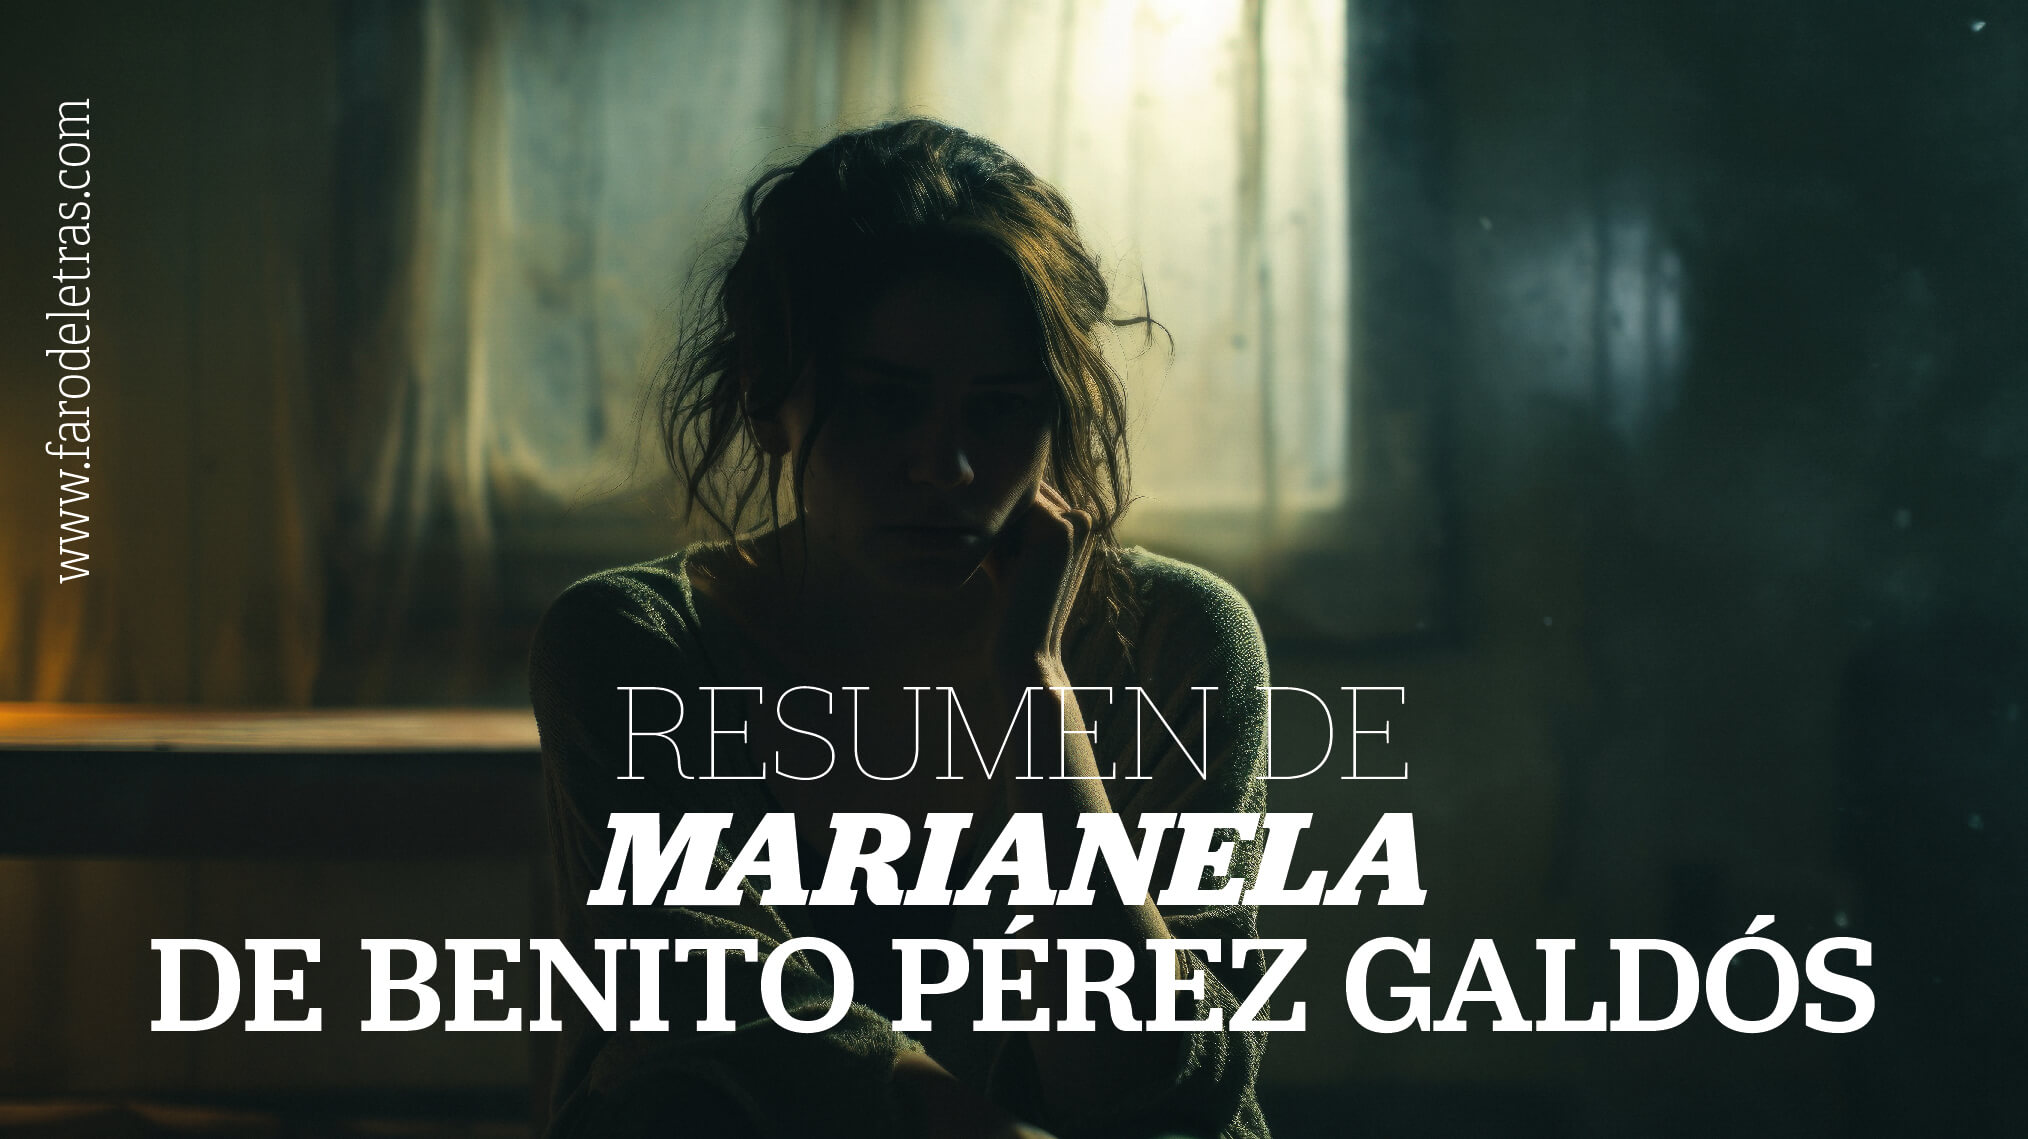 RESUMEN DE MARIANELA DE BENITO PÉREZ GALDÓS